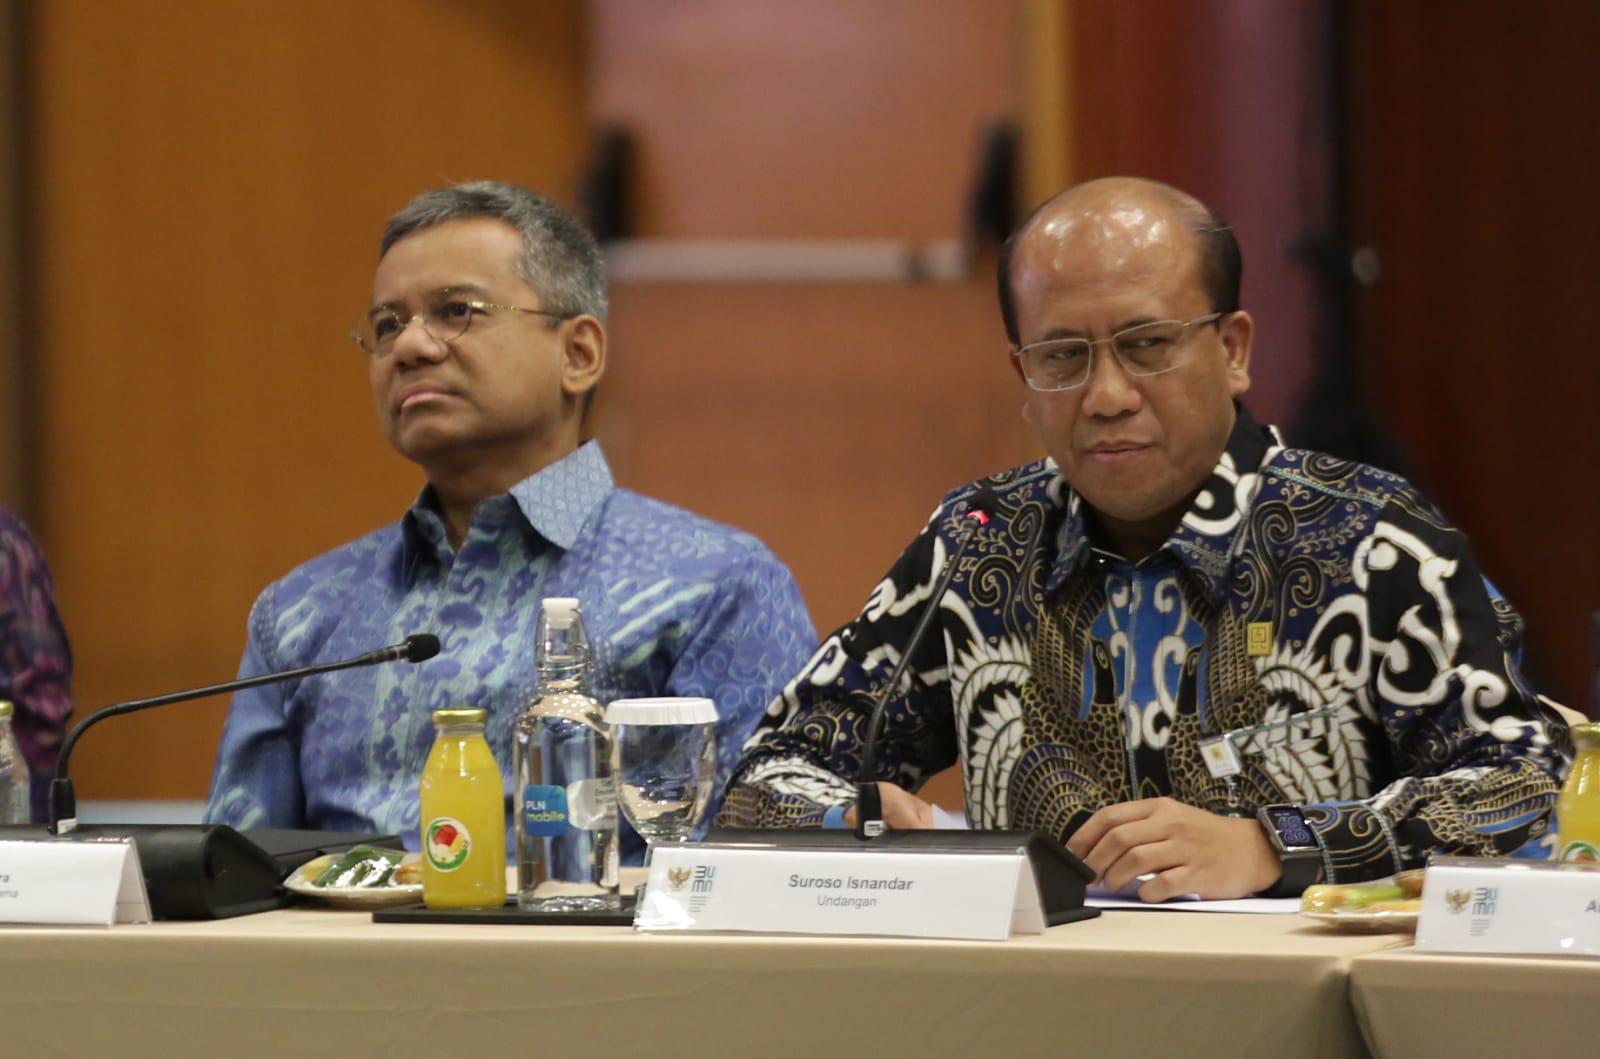 Direktur Manajemen Risiko PLN, Suroso Isnandar (kanan) saat menyampaikan sambutan dalam Rapat Umum Pemegang Saham PLN di Jakarta, Rabu (20/9).